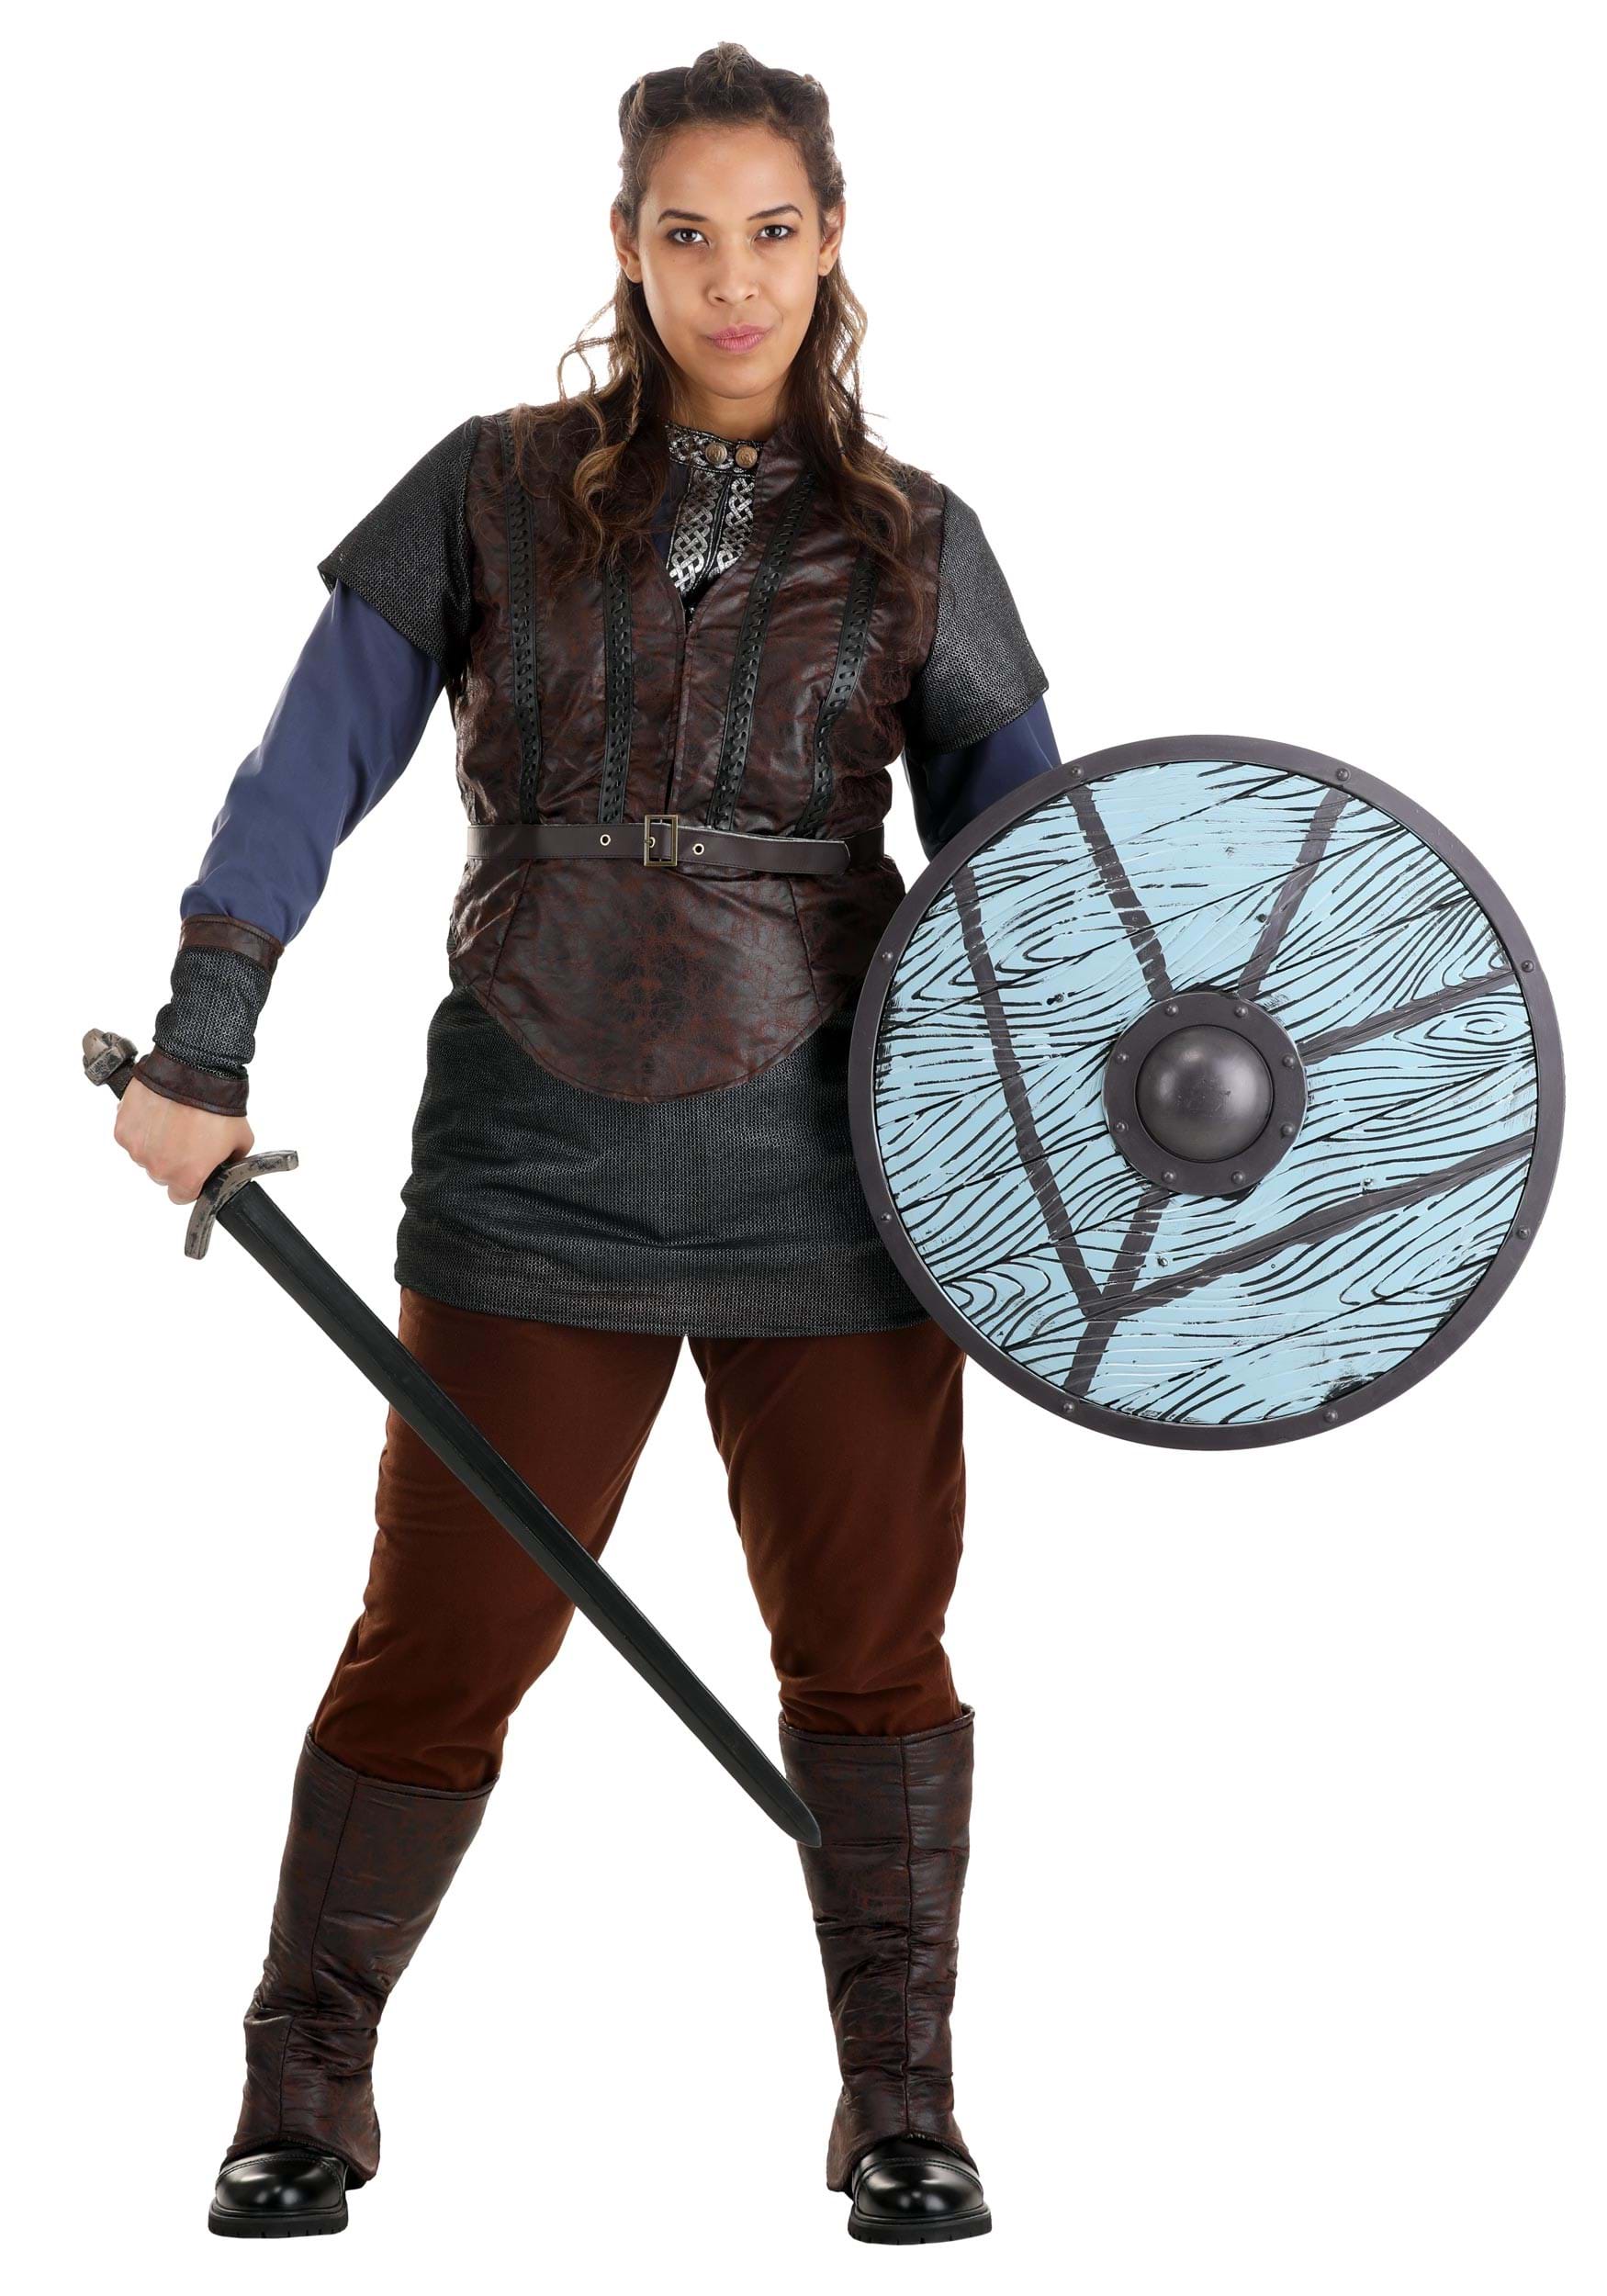 Viking Costume for Women